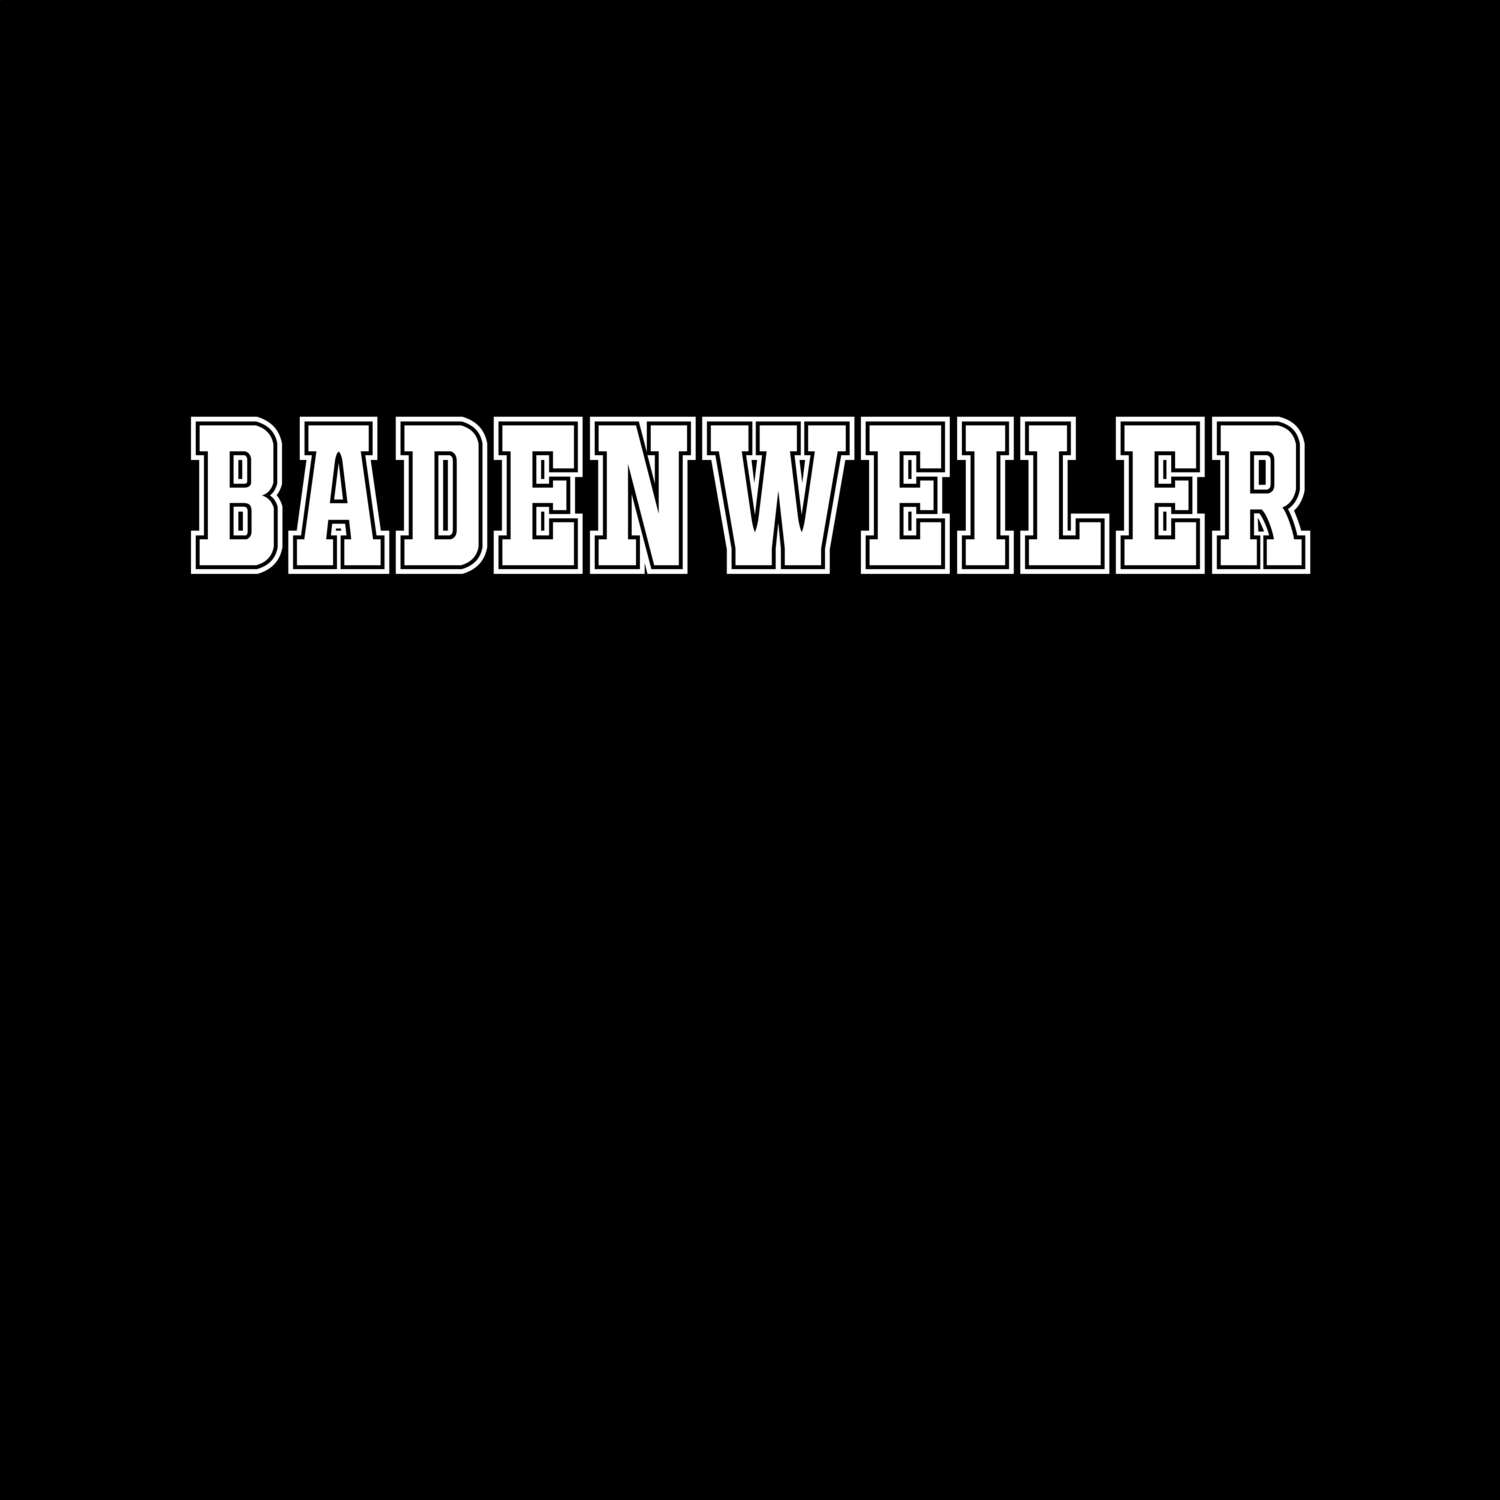 Badenweiler T-Shirt »Classic«